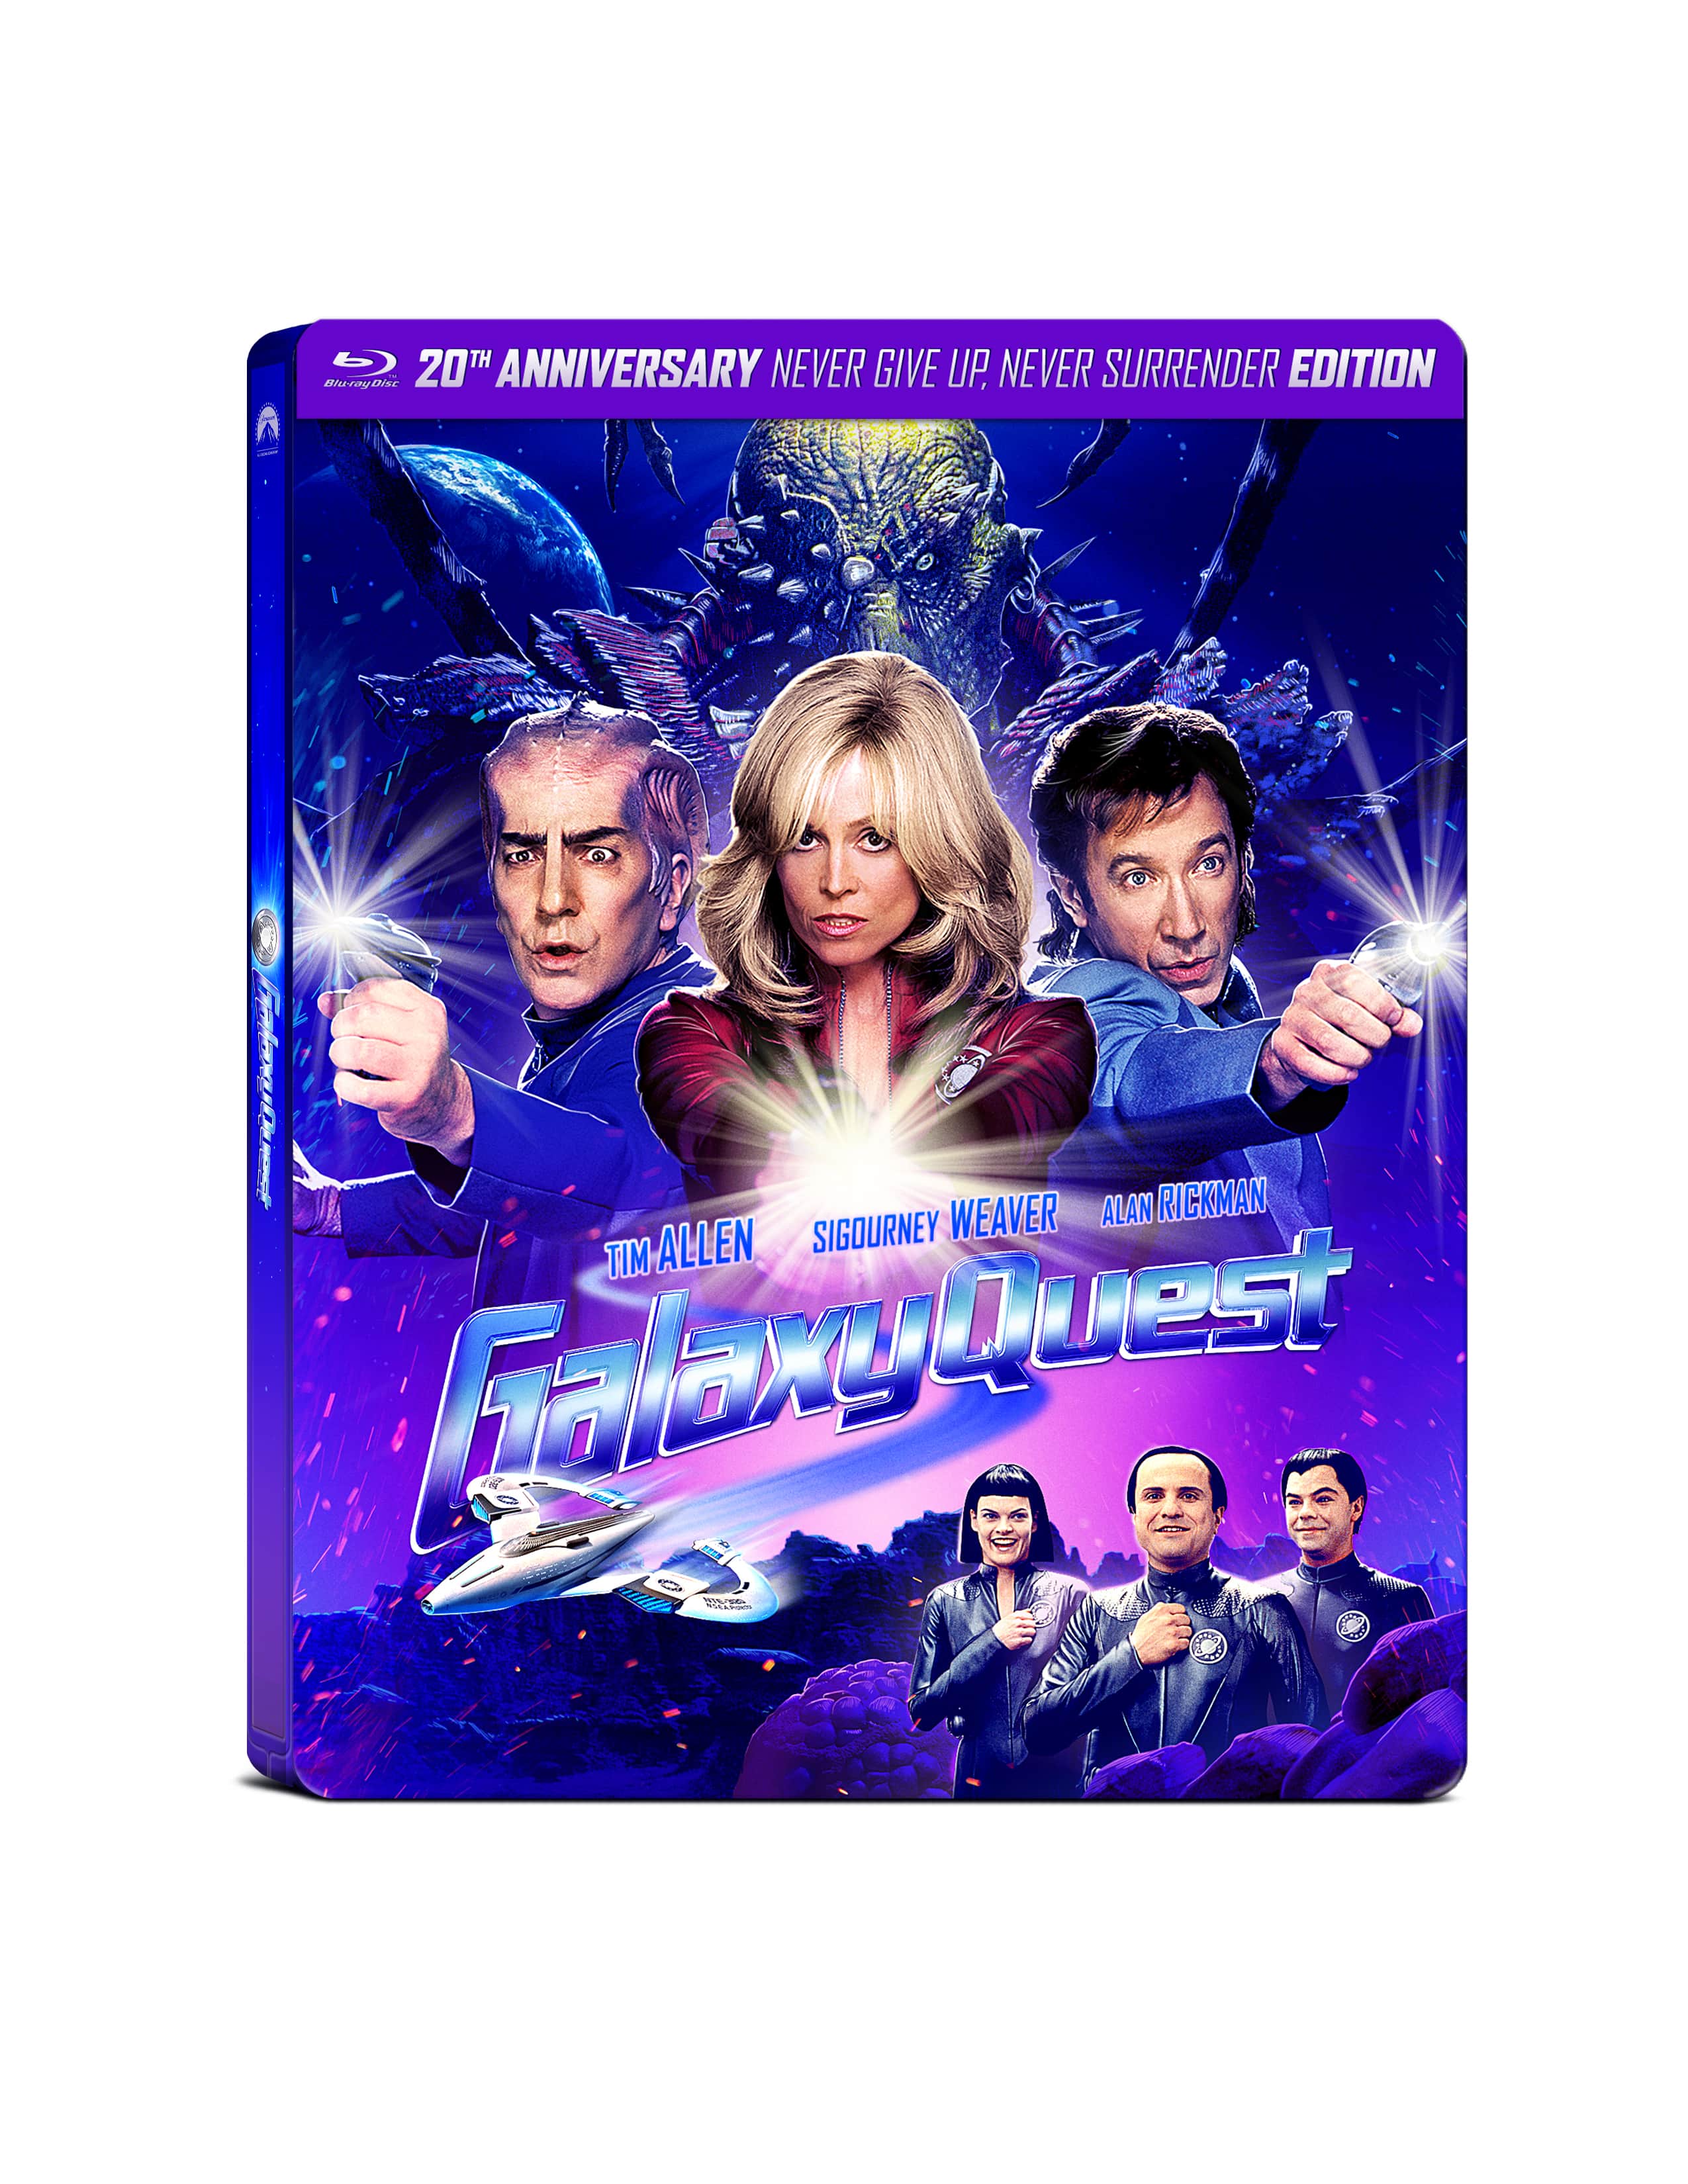 Galaxy Quest Blu-ray